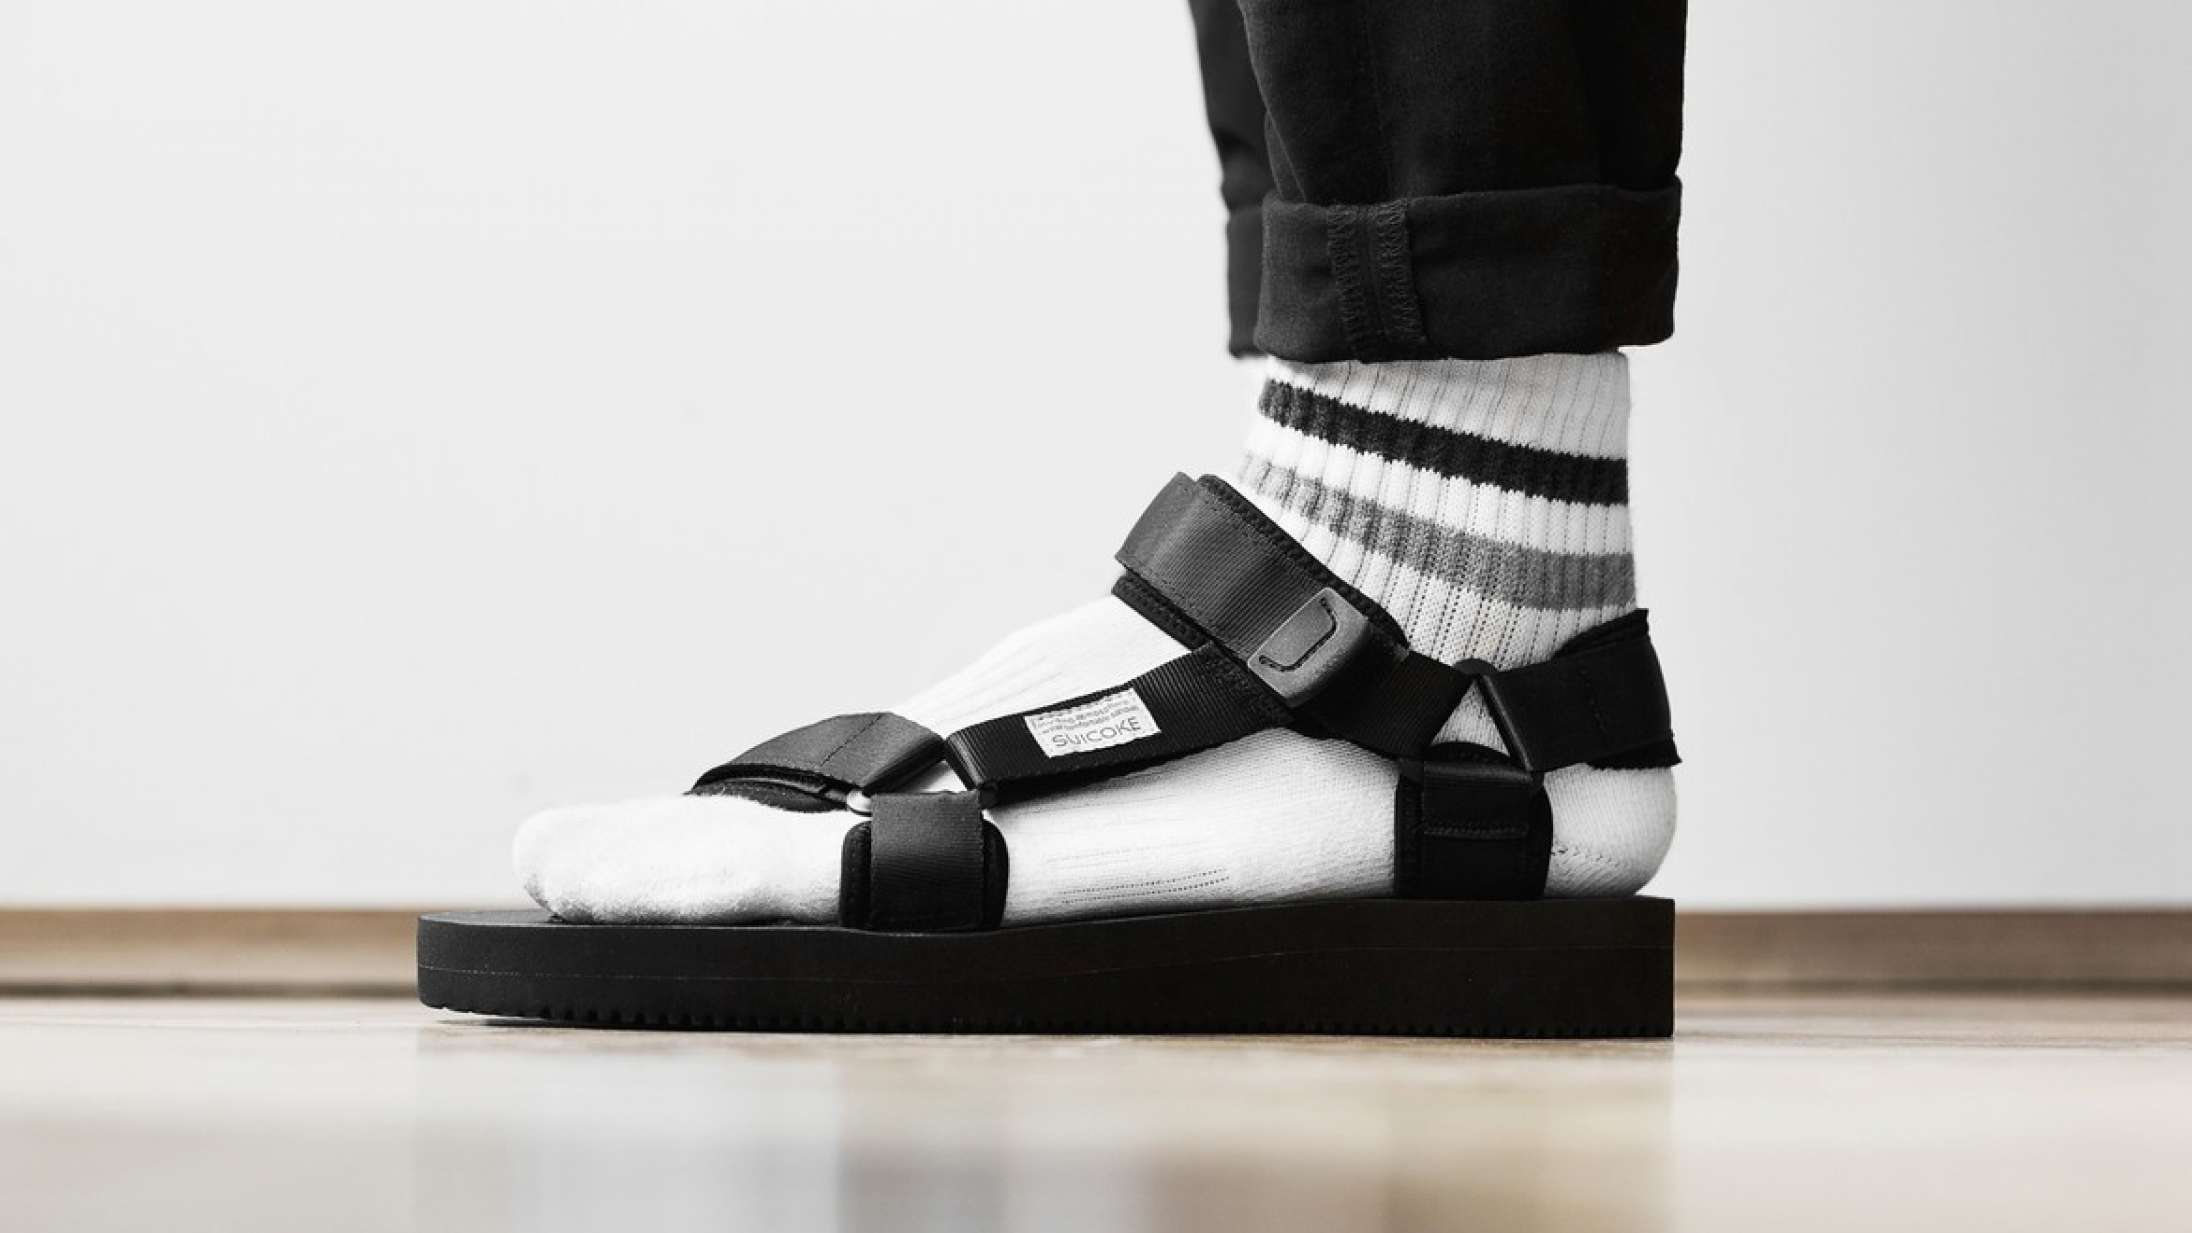 Fra fodformet til fashion: Sådan fandt velcro-sandalen ind i varmen